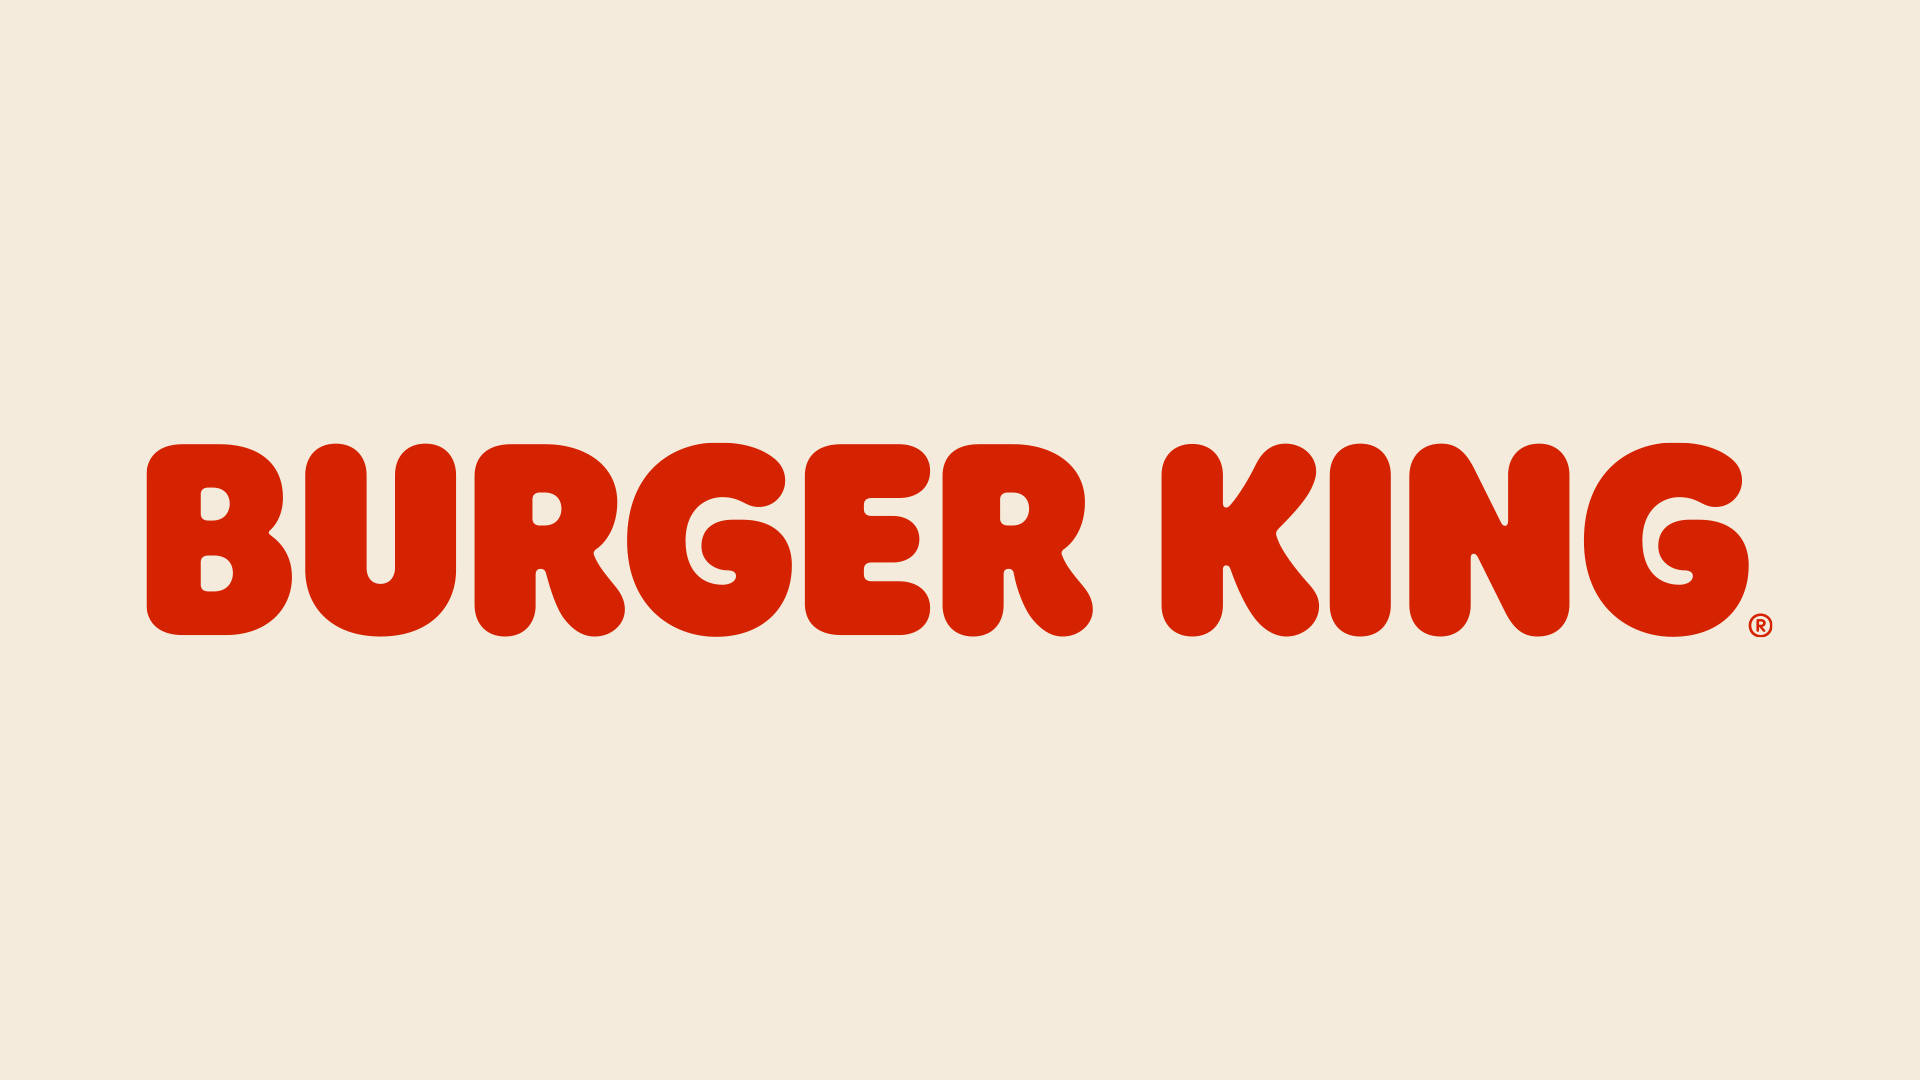 Burgerking Minimalistisches Wortzeichen Wallpaper